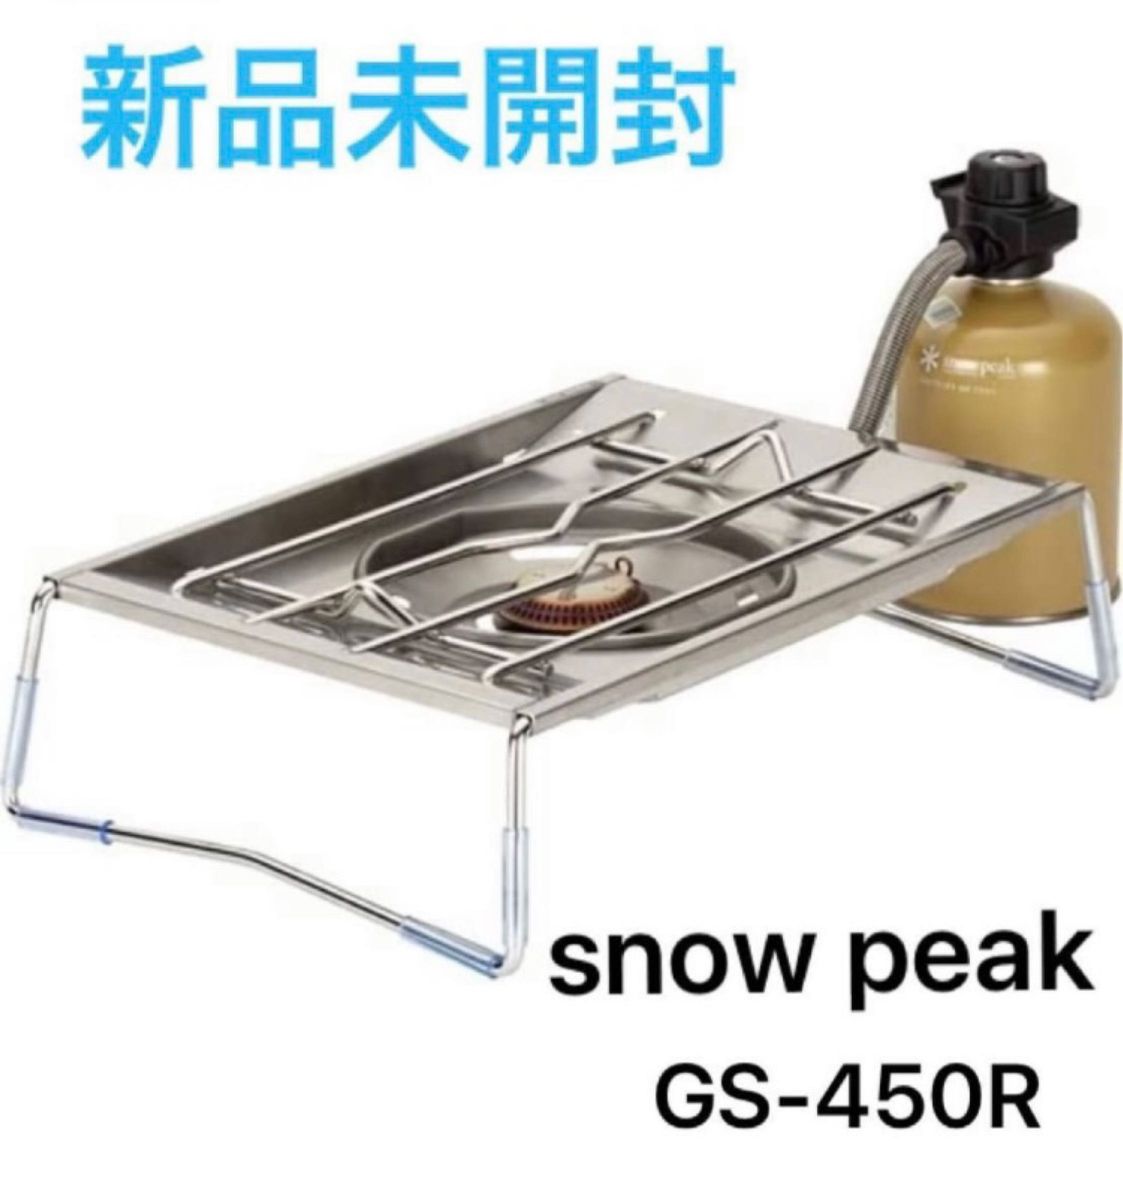 新品未開封 スノーピーク(snow peak) フラットバーナー GS-450R-